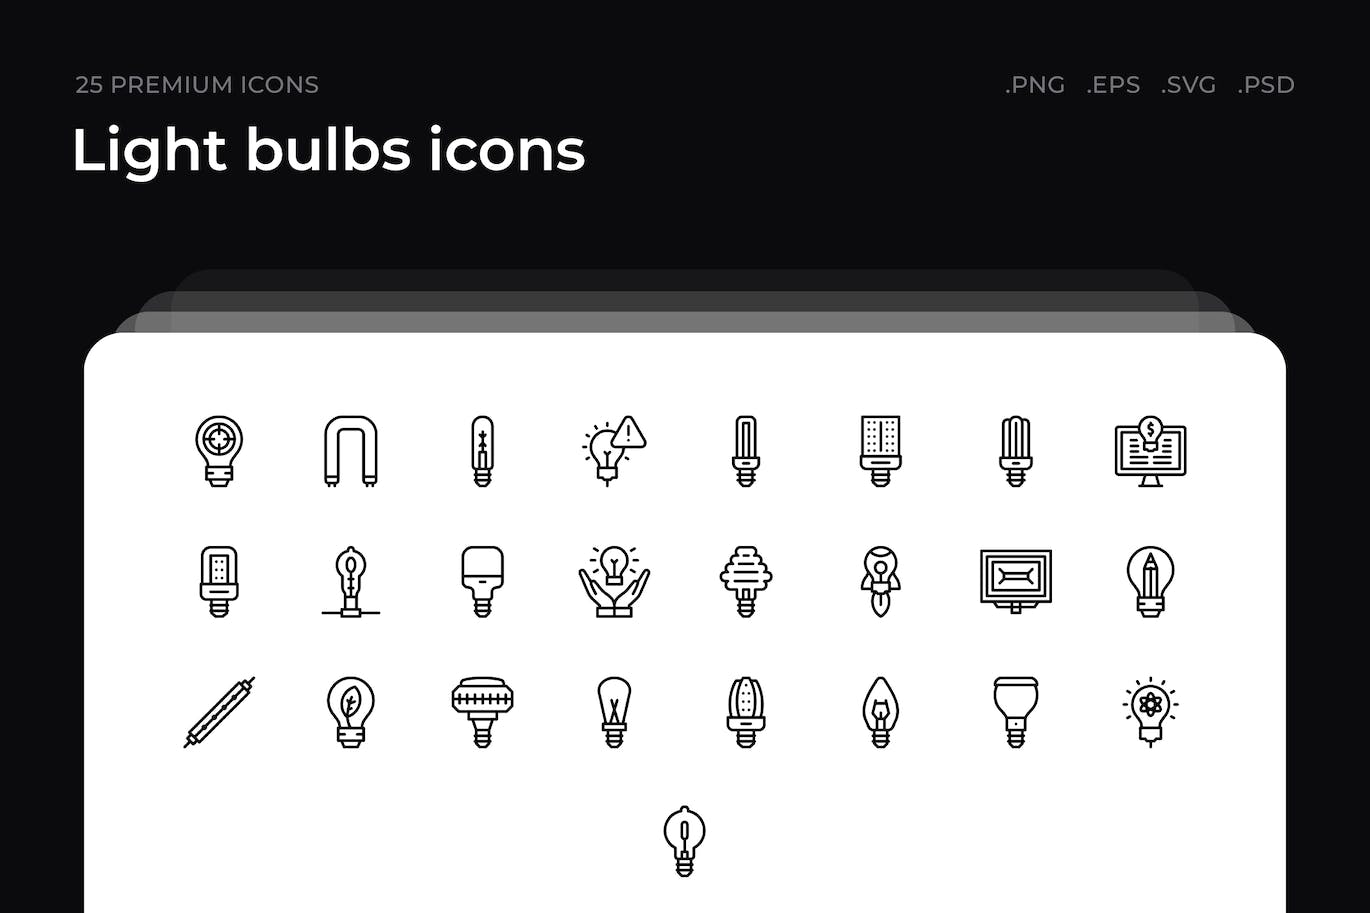 25枚灯泡主题简约线条矢量图标 Light bulbs icons 图标素材 第1张